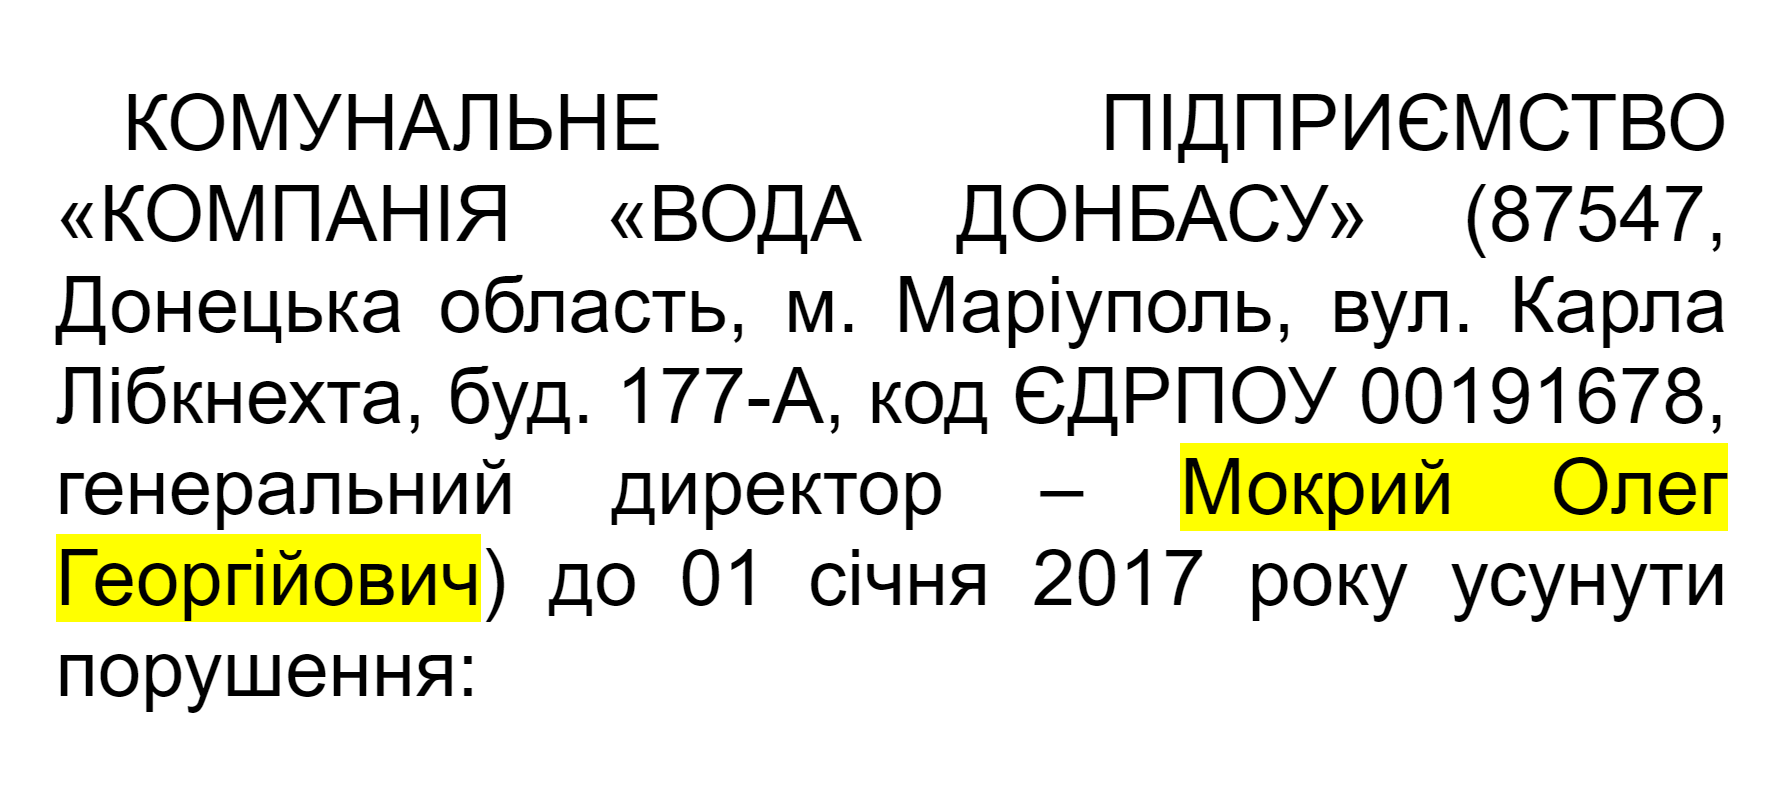 Ім'я колишнього гендиректора "Води Донбасу" Олега Мокрого фігурує у документах НКРЕКП